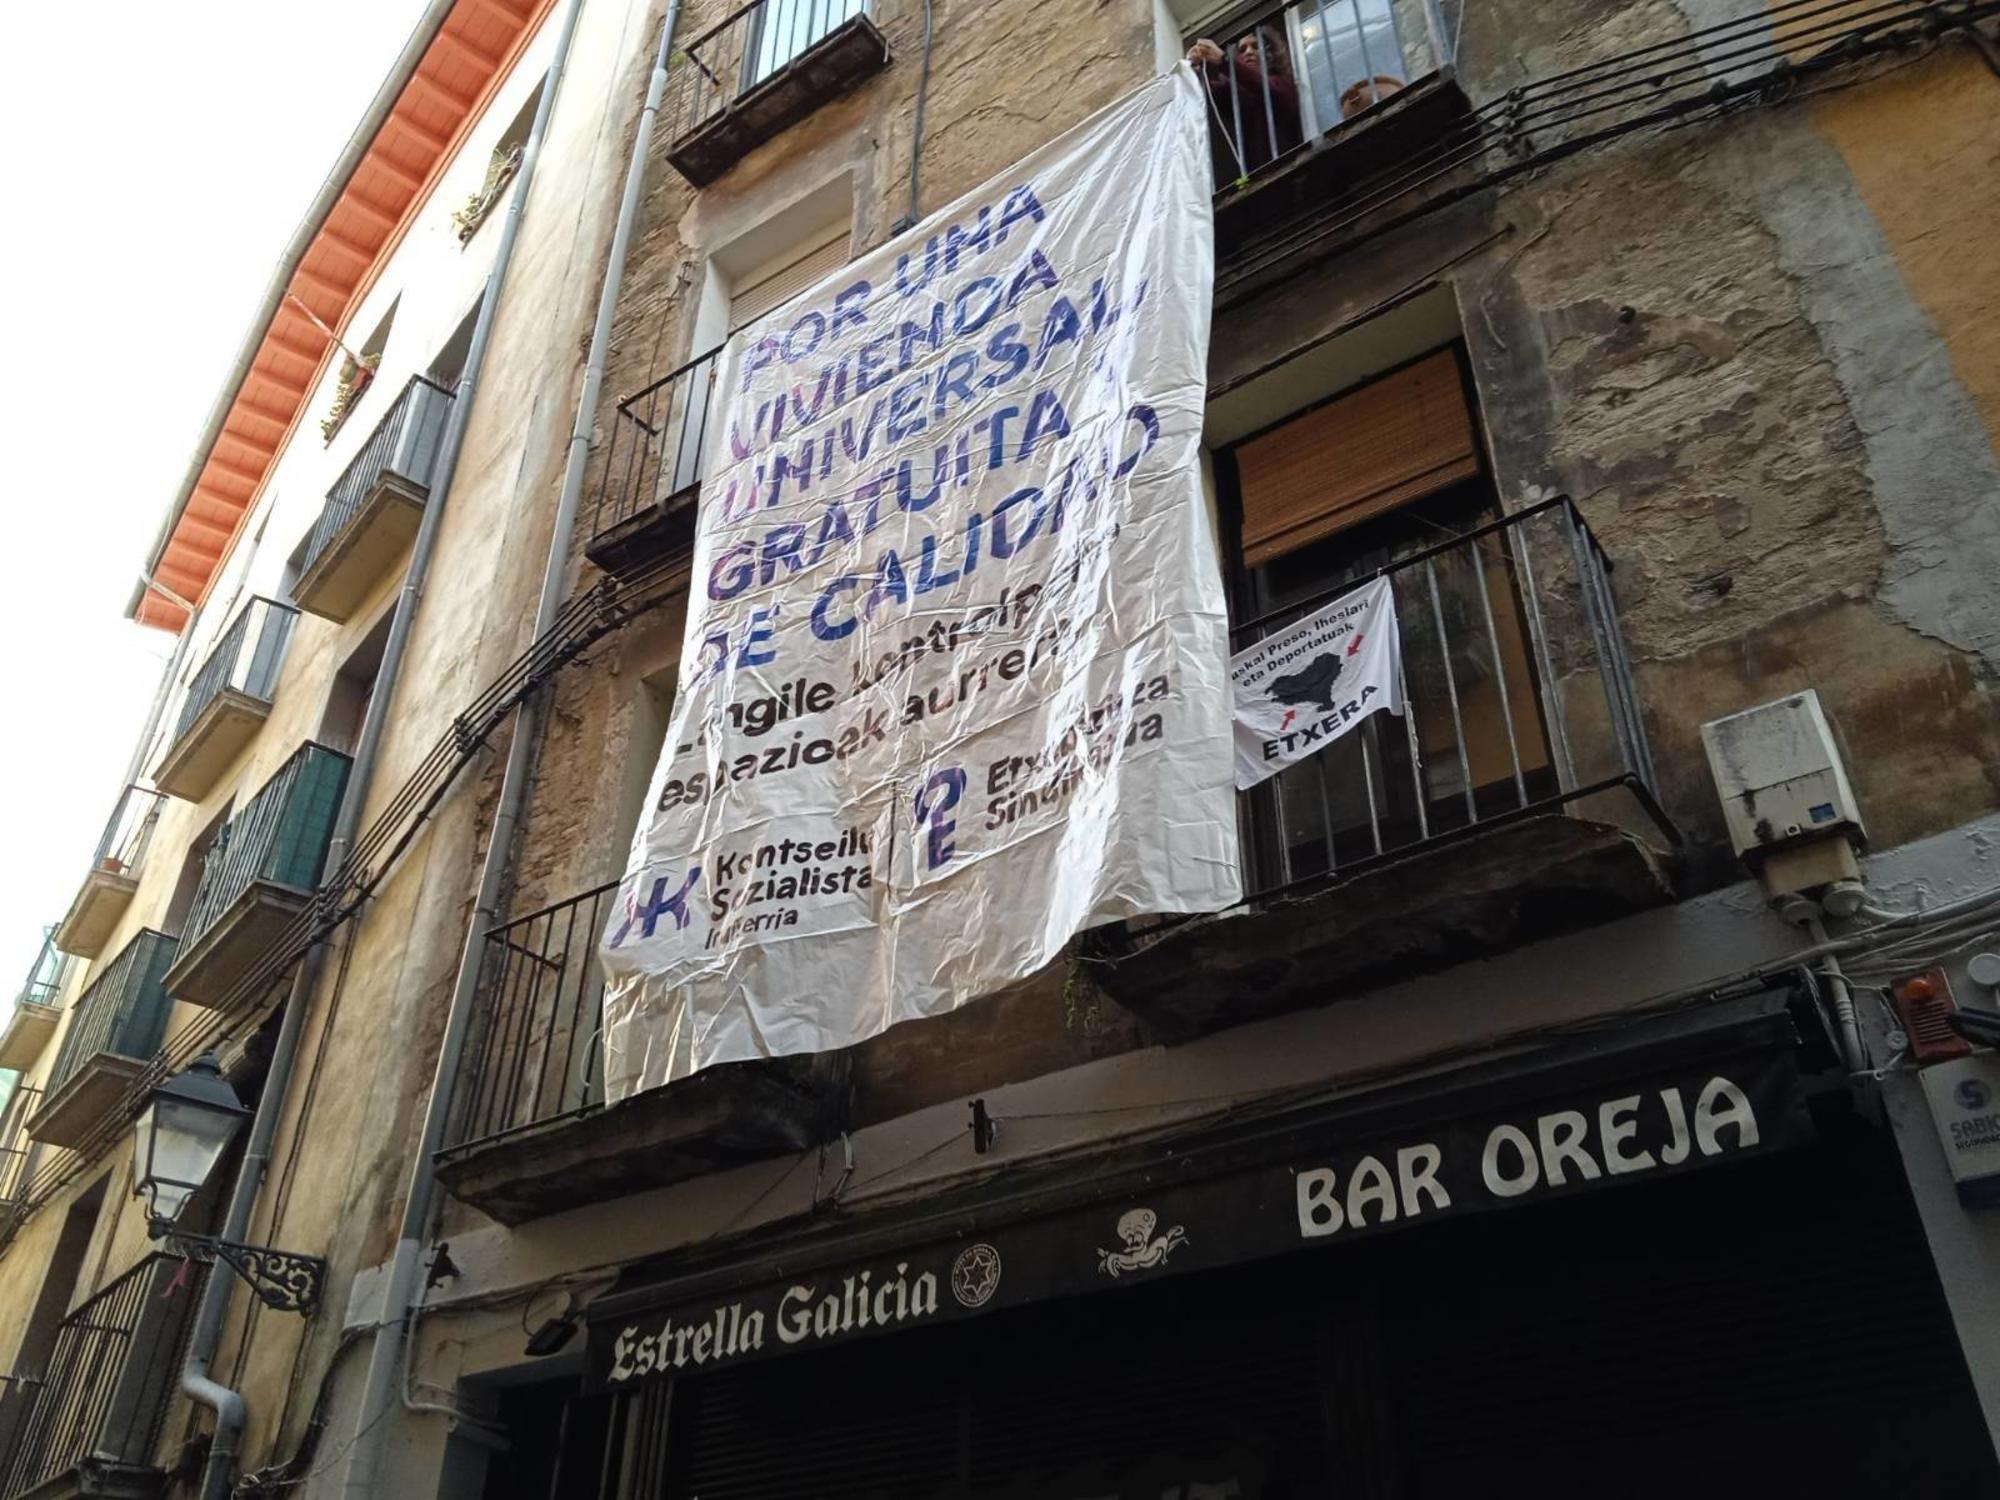 Pancarta cuelga desde los balcones del piso intervenido en calle Jarauta, Pamplona / Konstseilu Sozialista Iruñerria